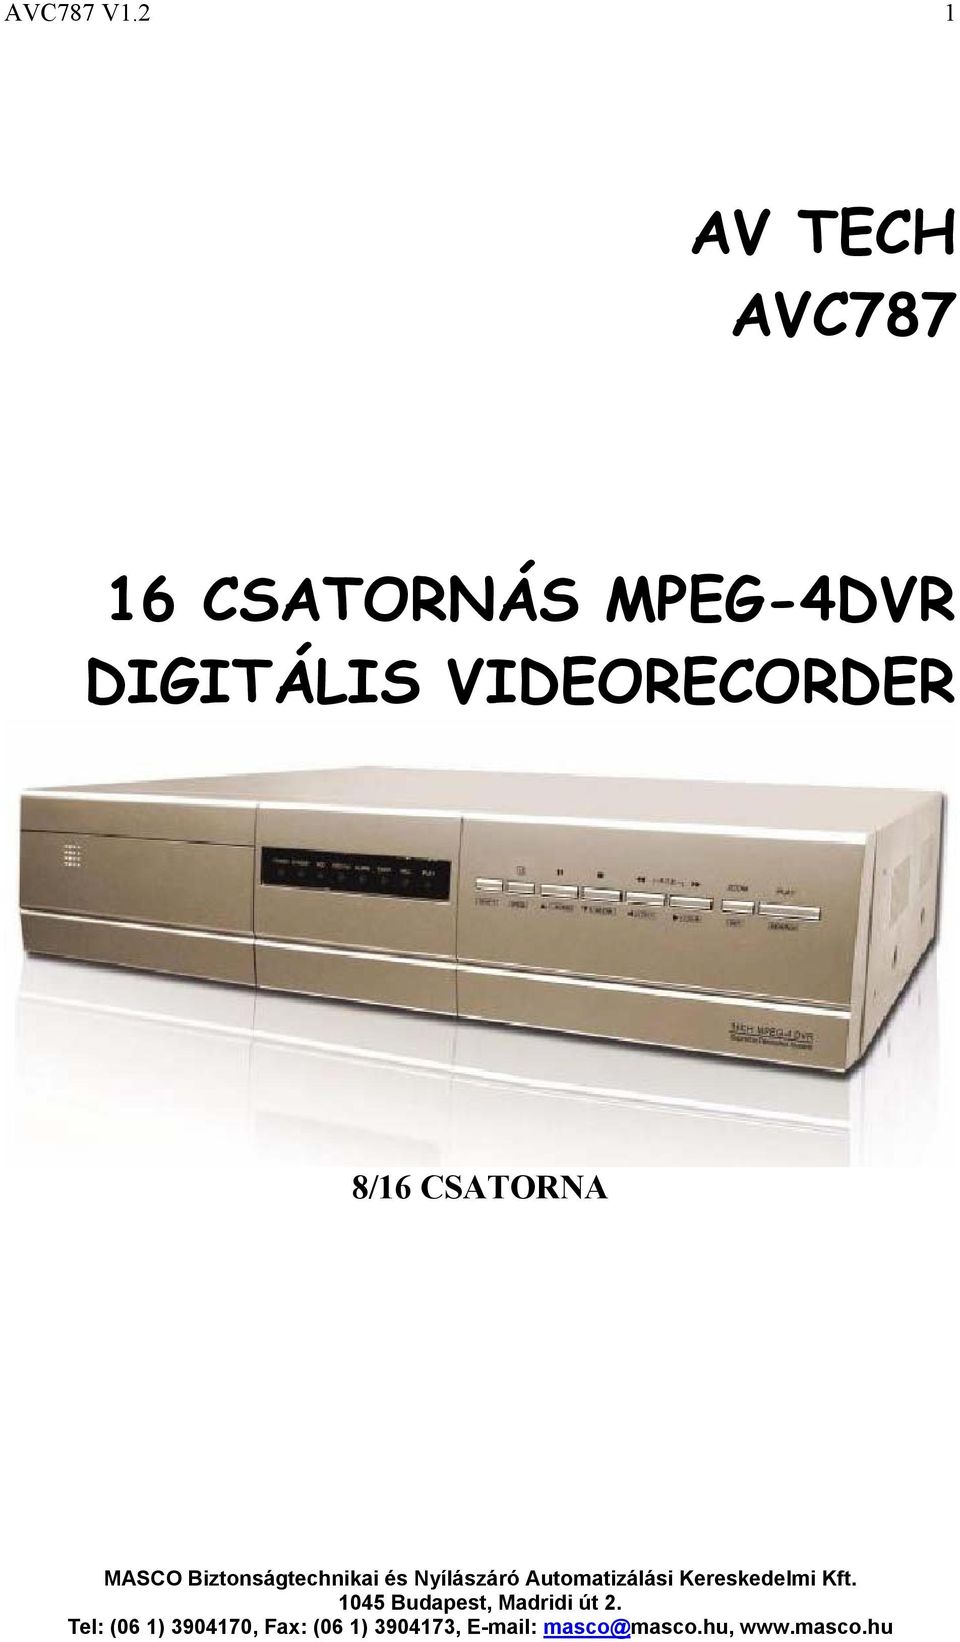 CSATORNÁS MPEG-4DVR